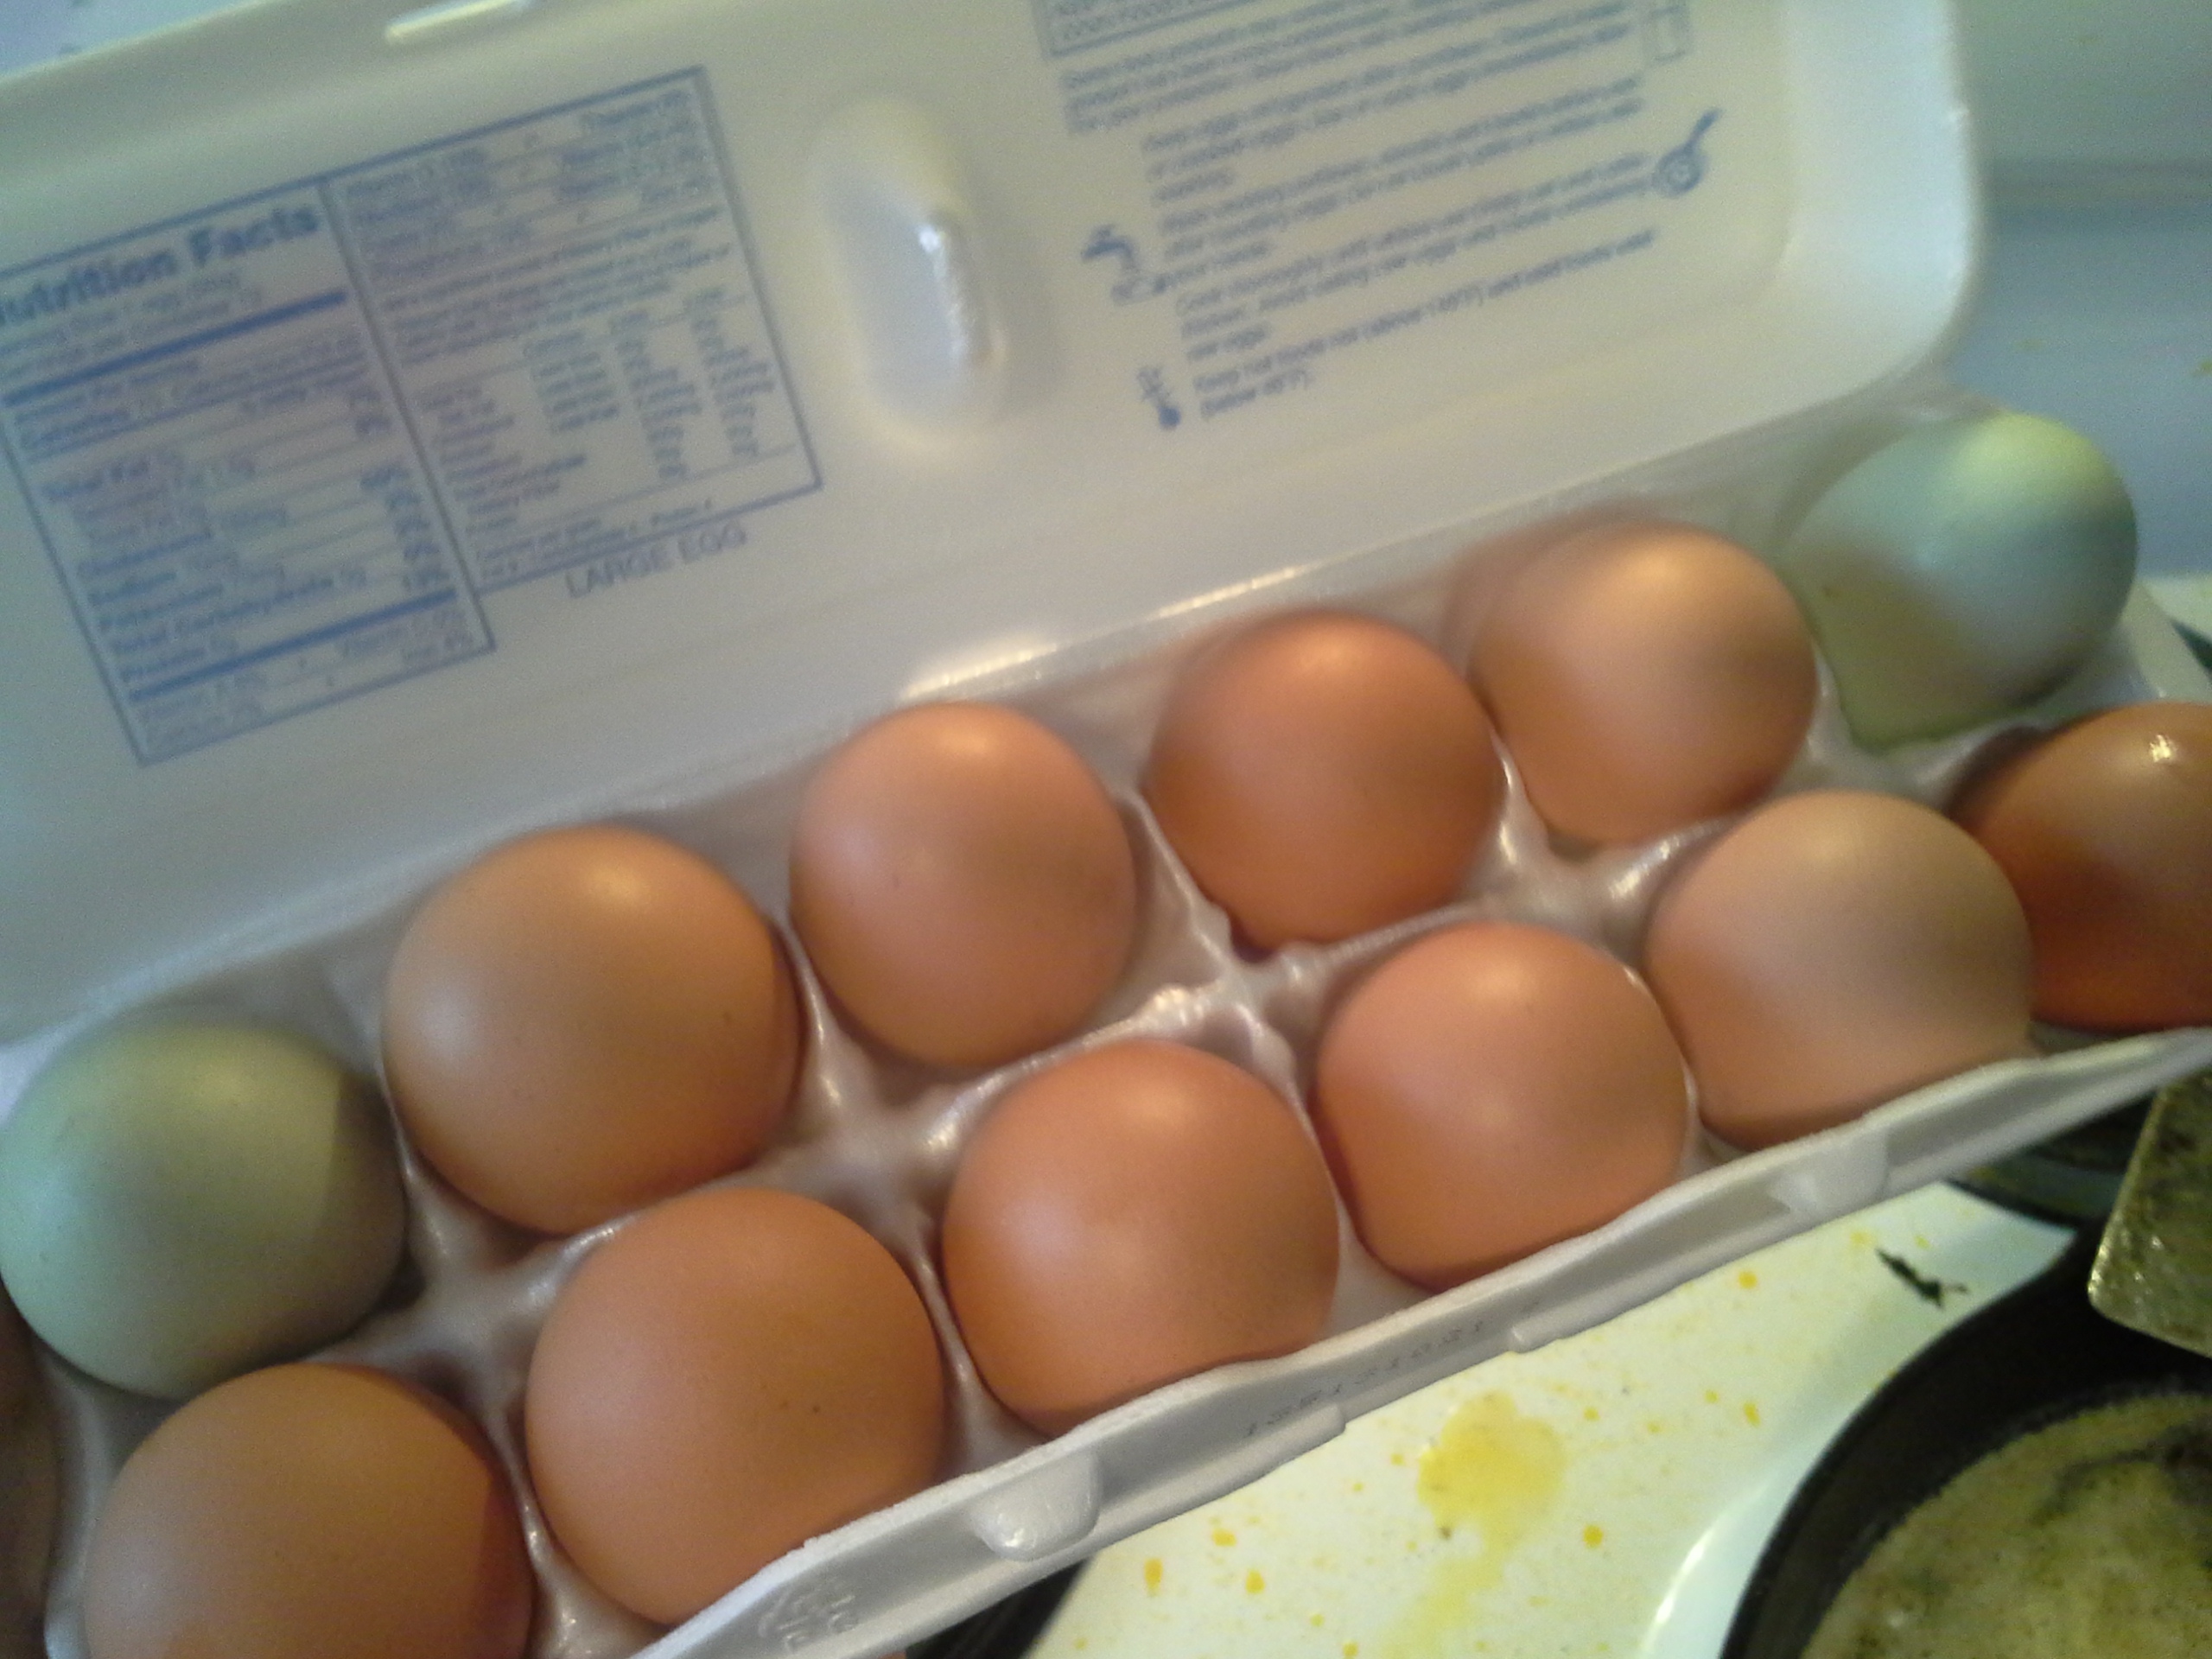 Blue and brown farm-fresh eggs